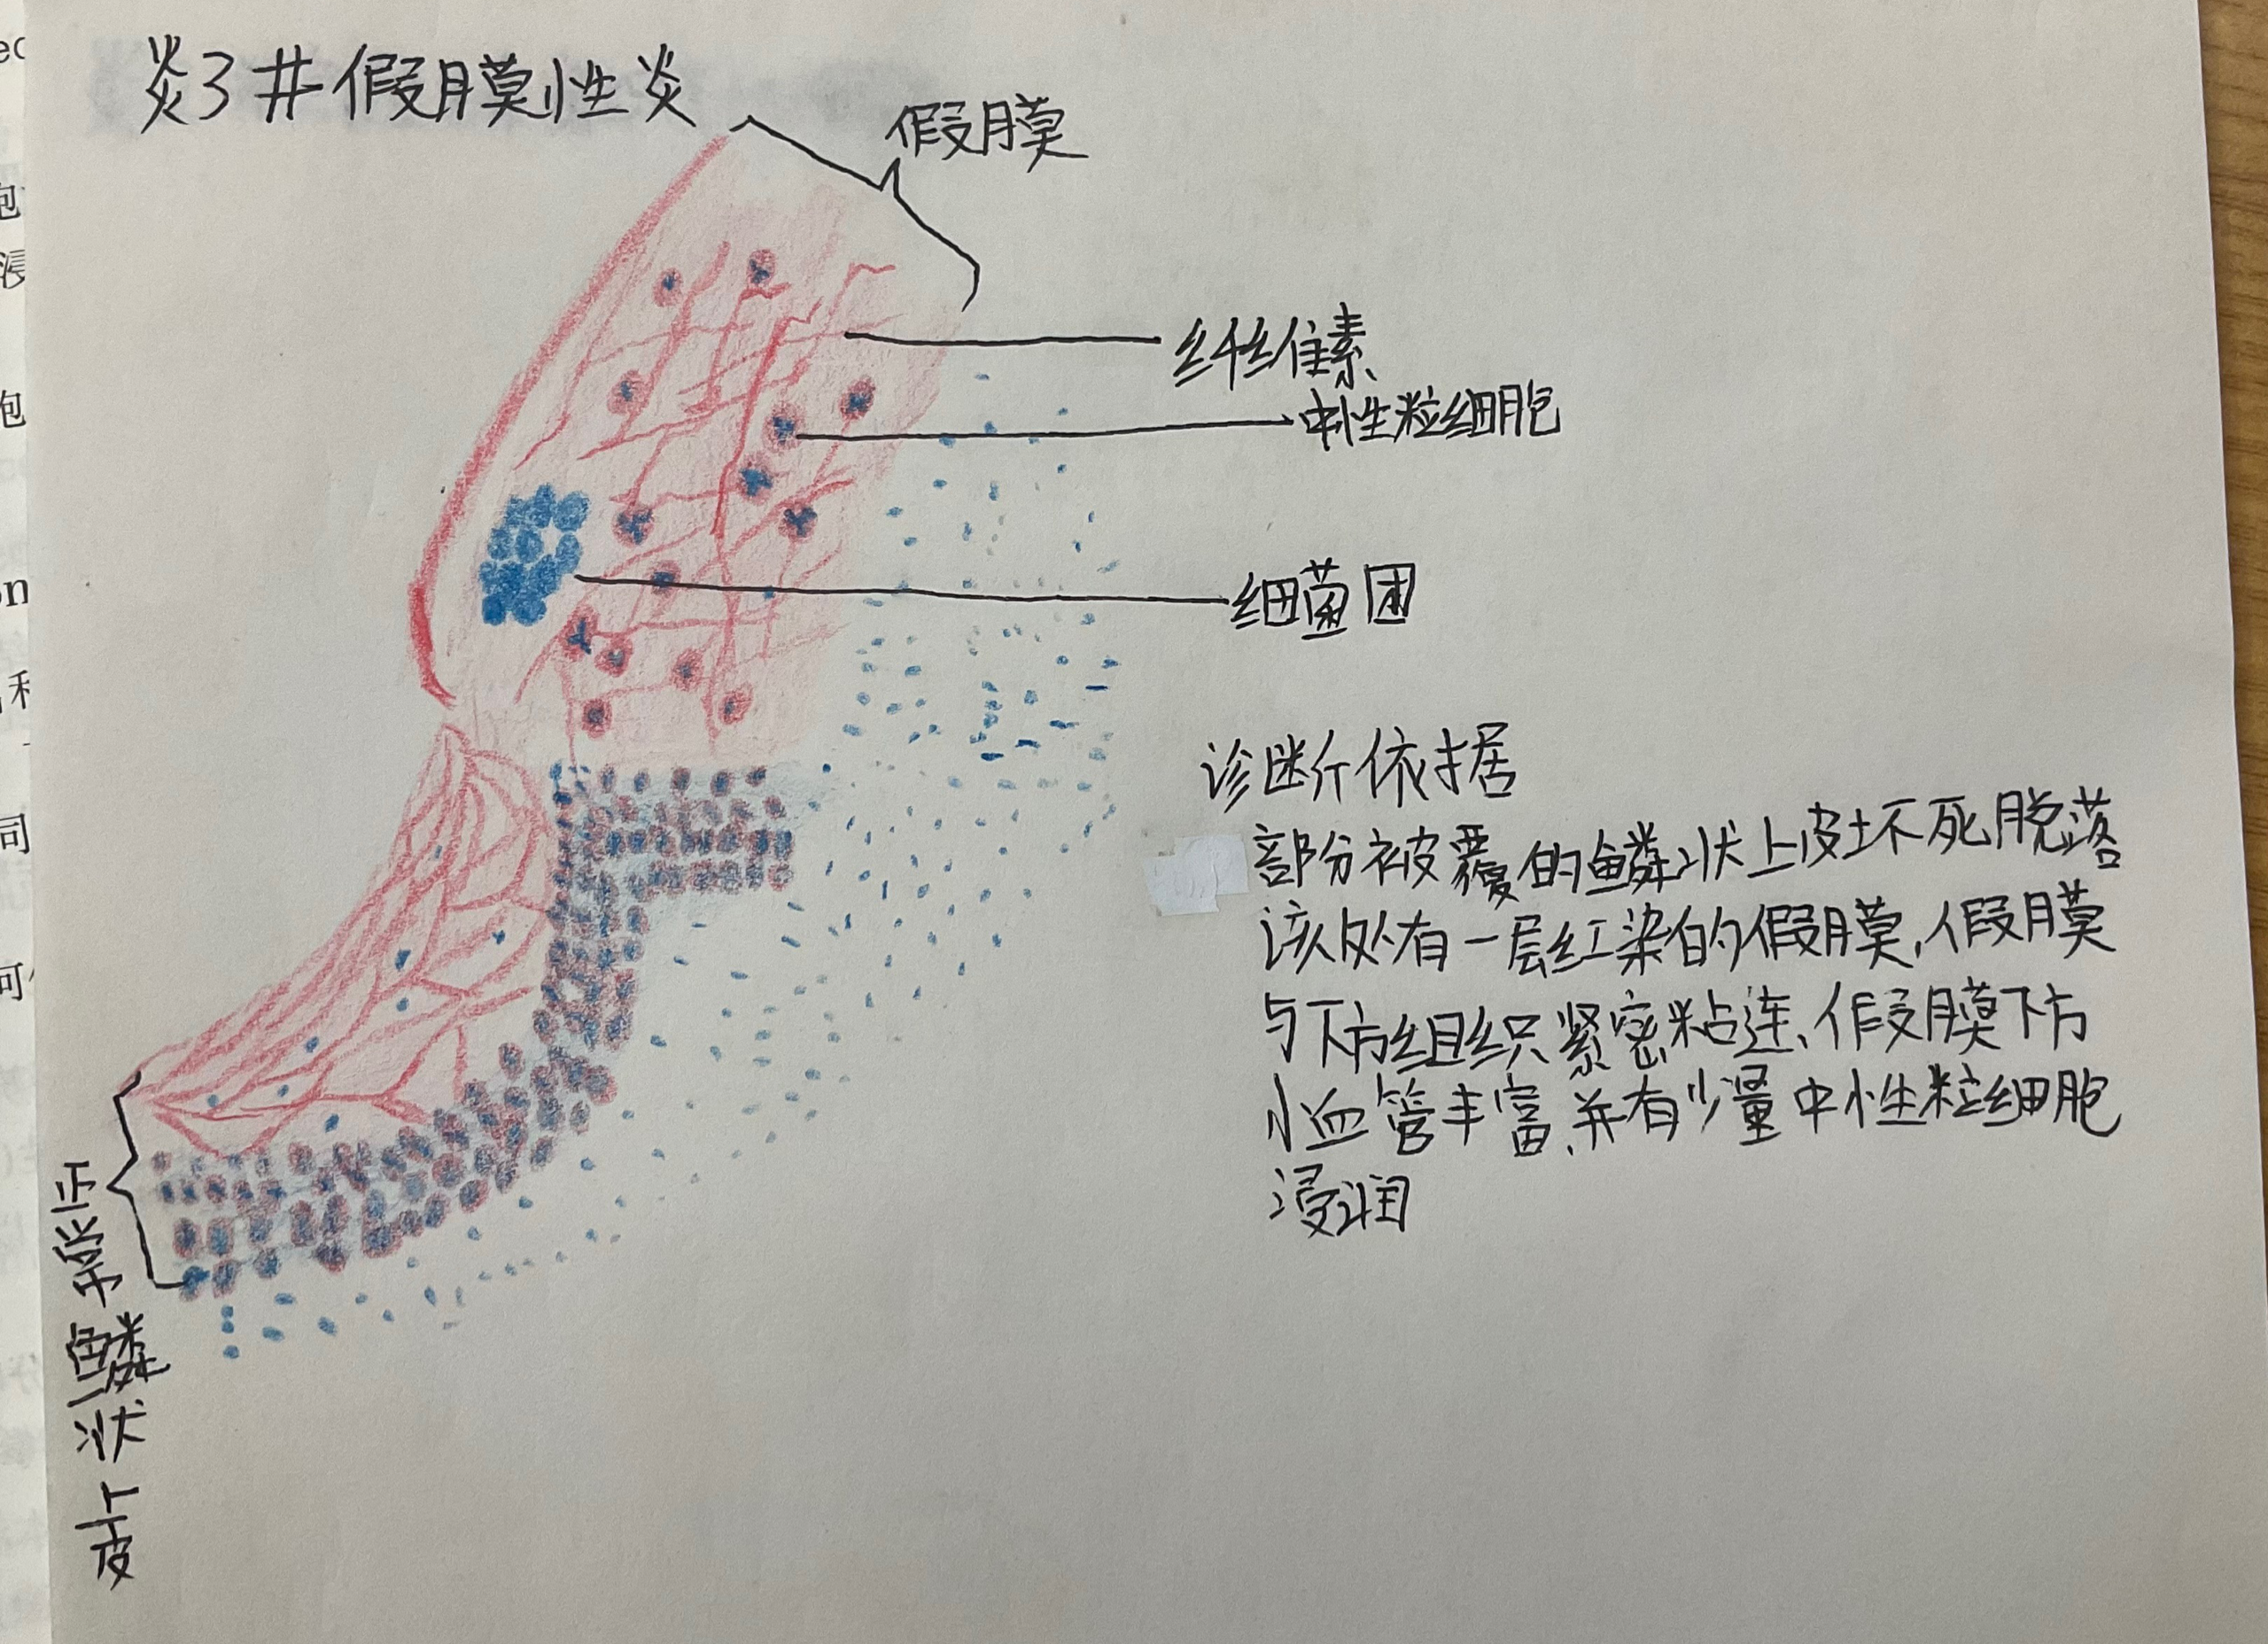 各类炎性细胞手绘图图片